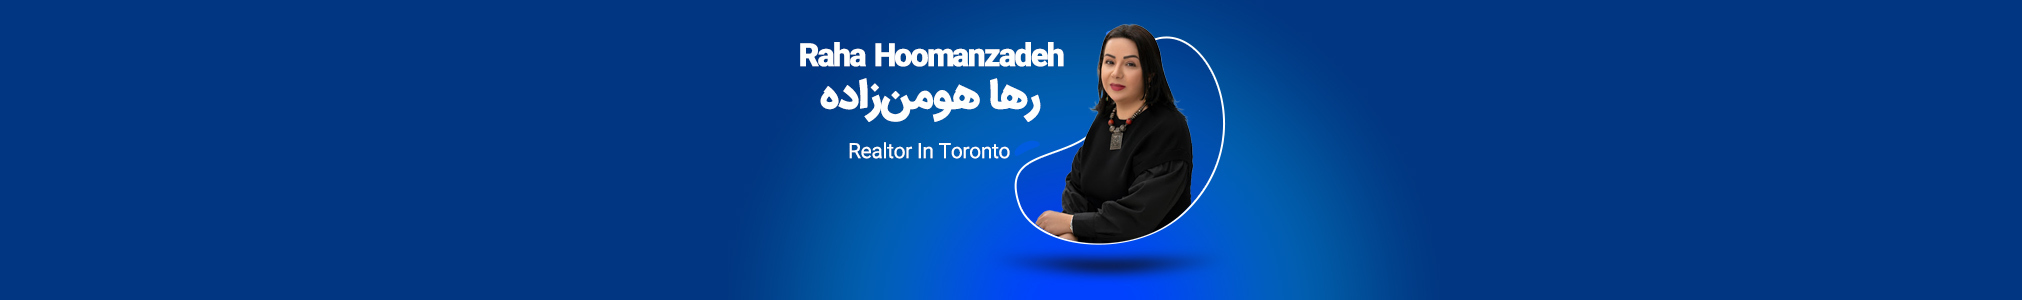 Raha Hoomanzadeh